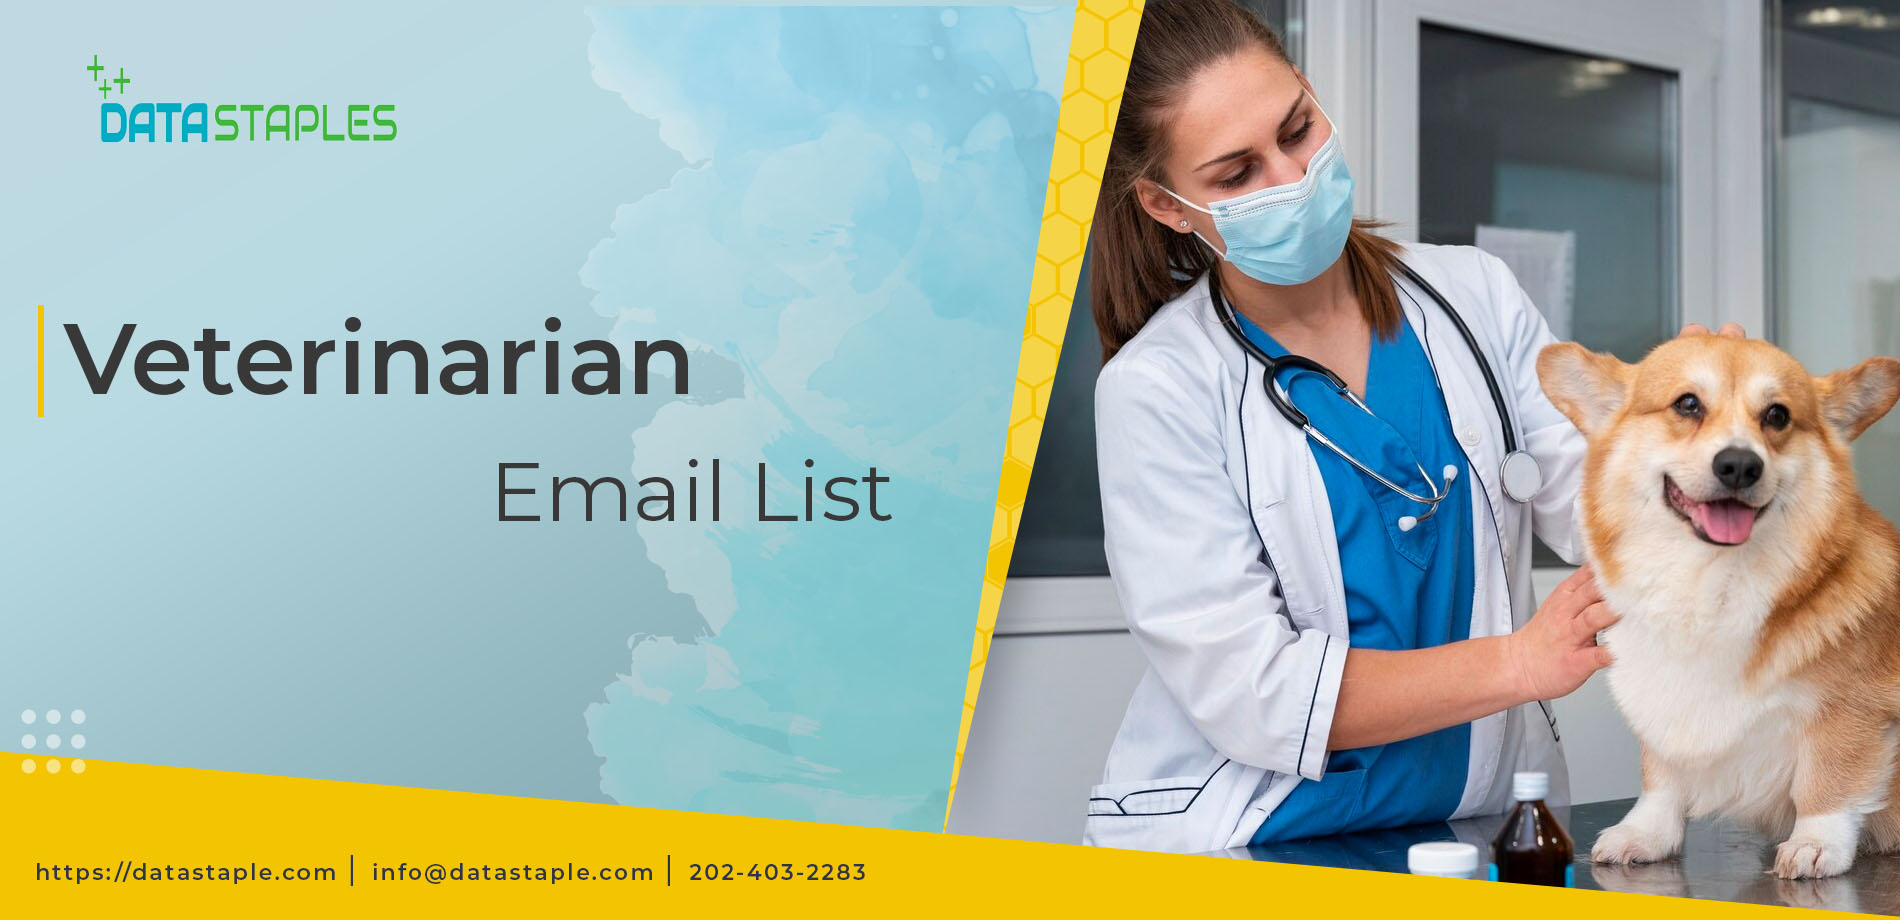 Veterinarian Email List | DataStaples